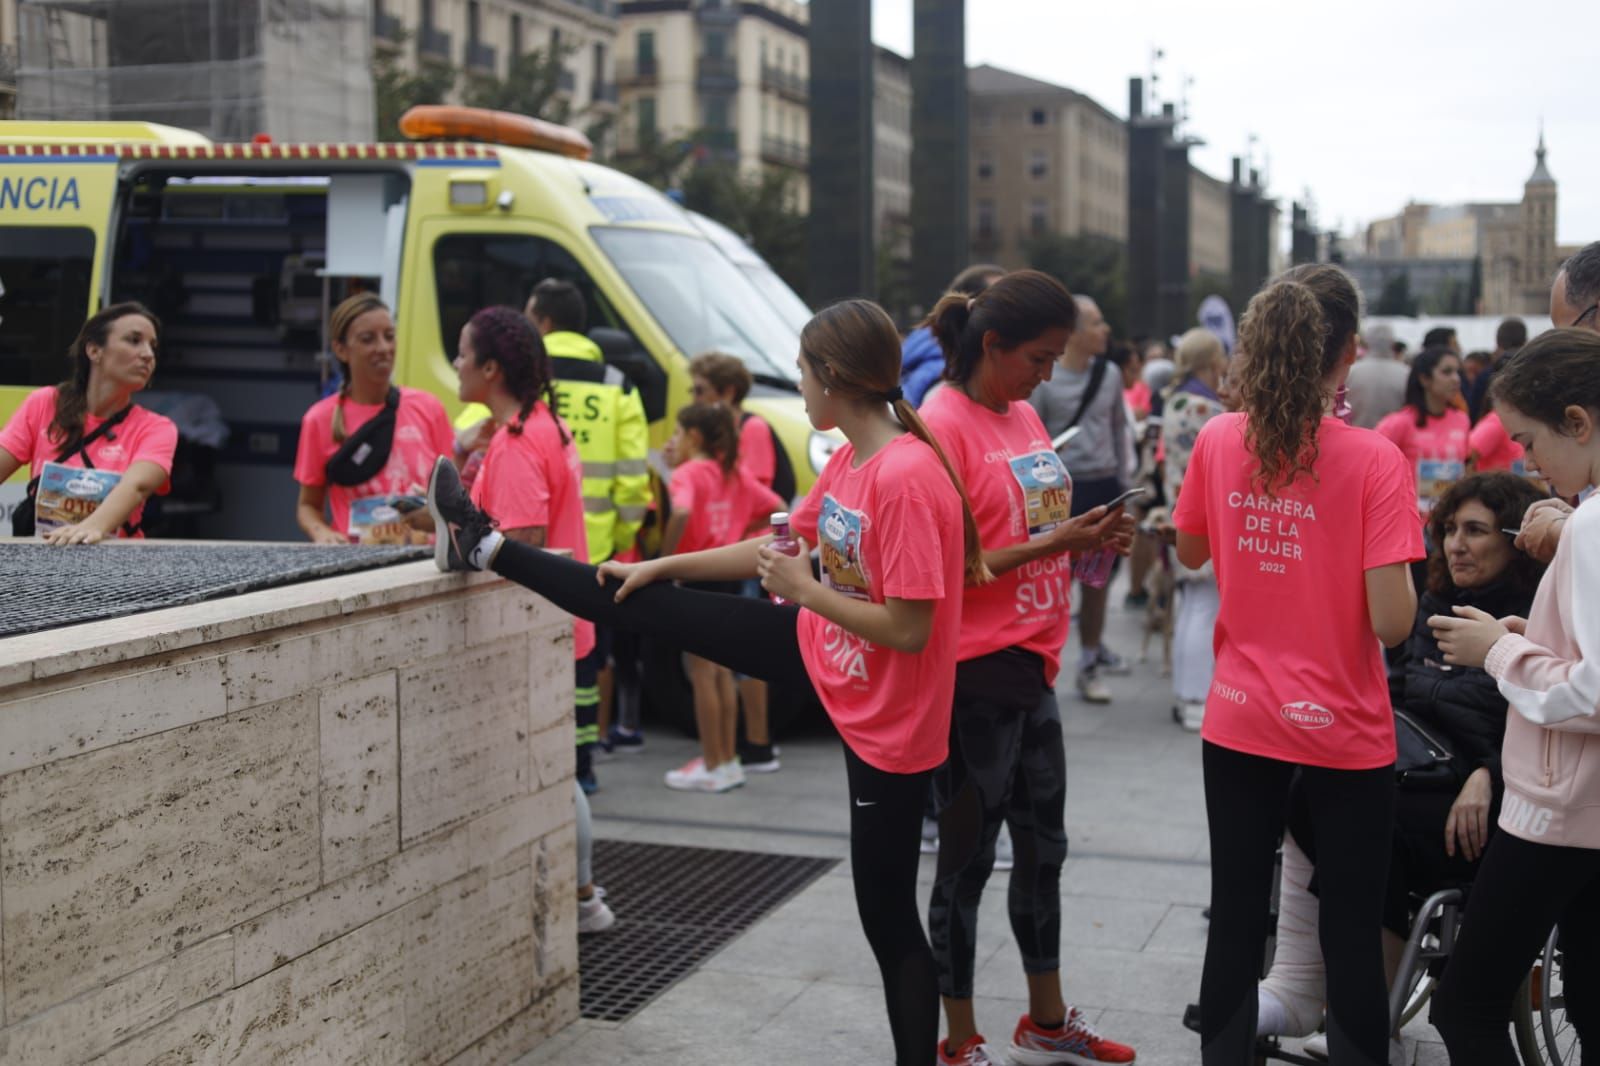 La Carrera de la Mujer de Zaragoza, en imágenes